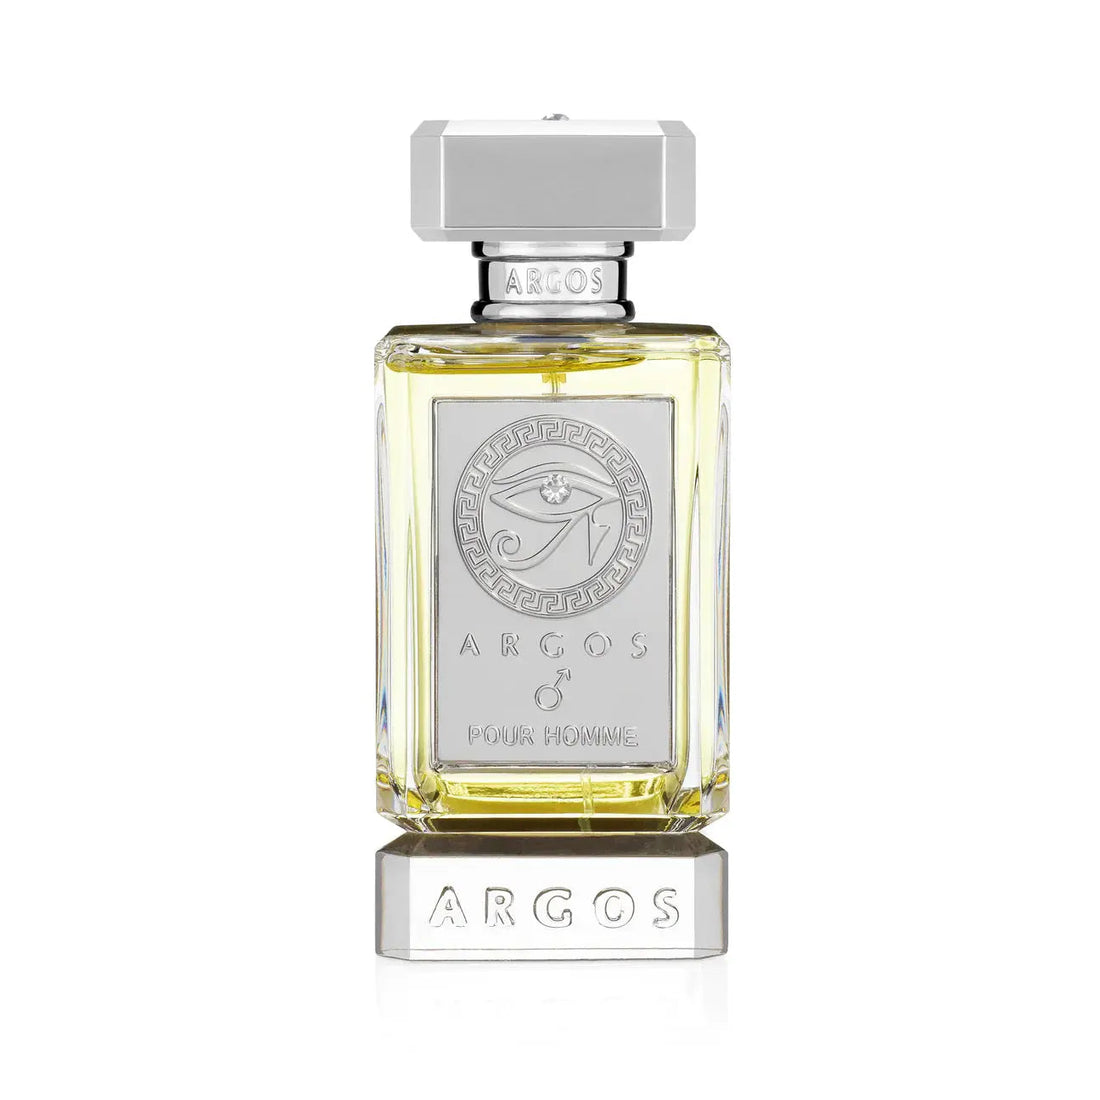 Argos Pour Homme eau de parfum - 30 ml